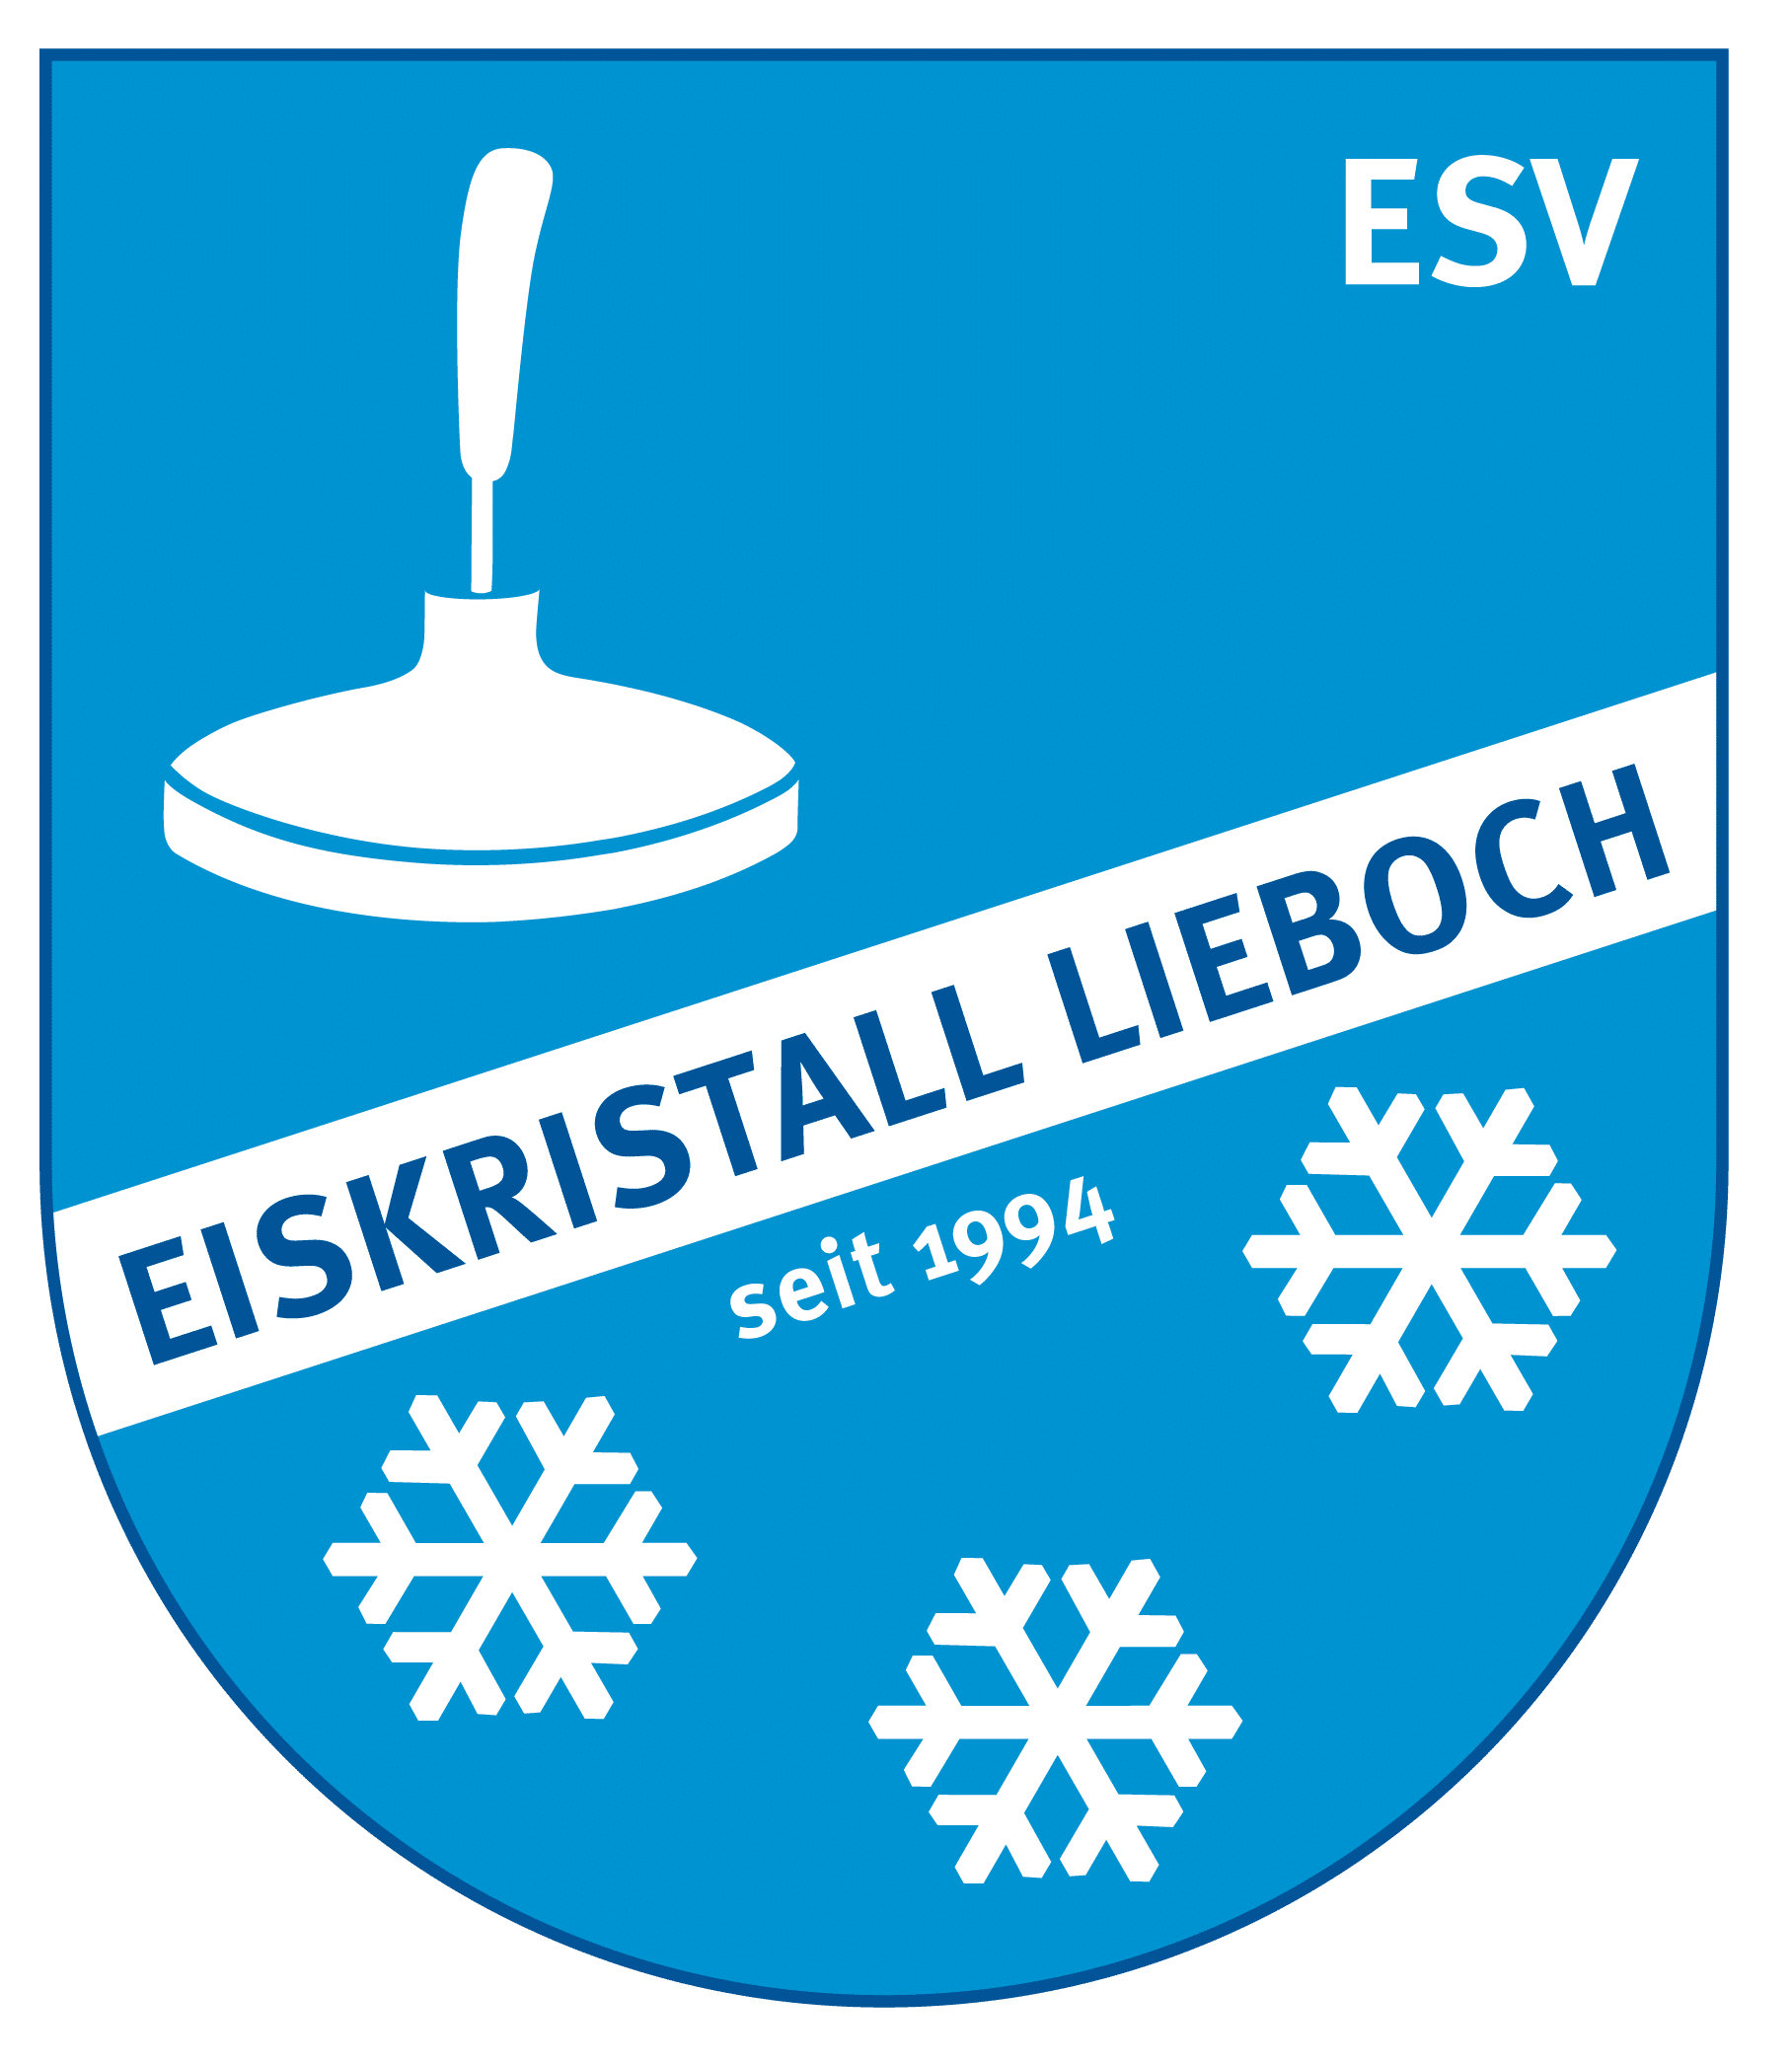 ESV Eiskristall LIEBOCH (ST)